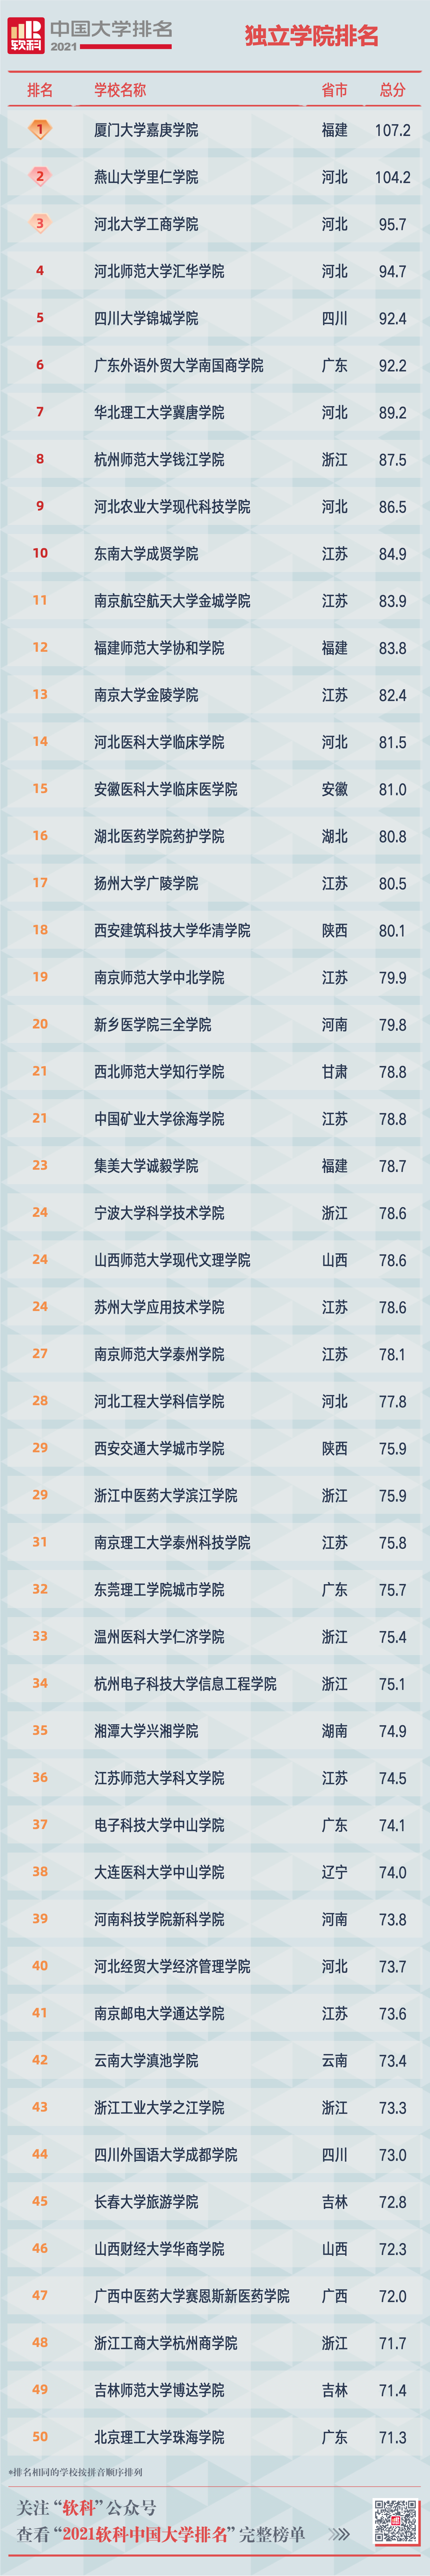  2021软科中国大学排名发布 “双一流”高校占比超八成